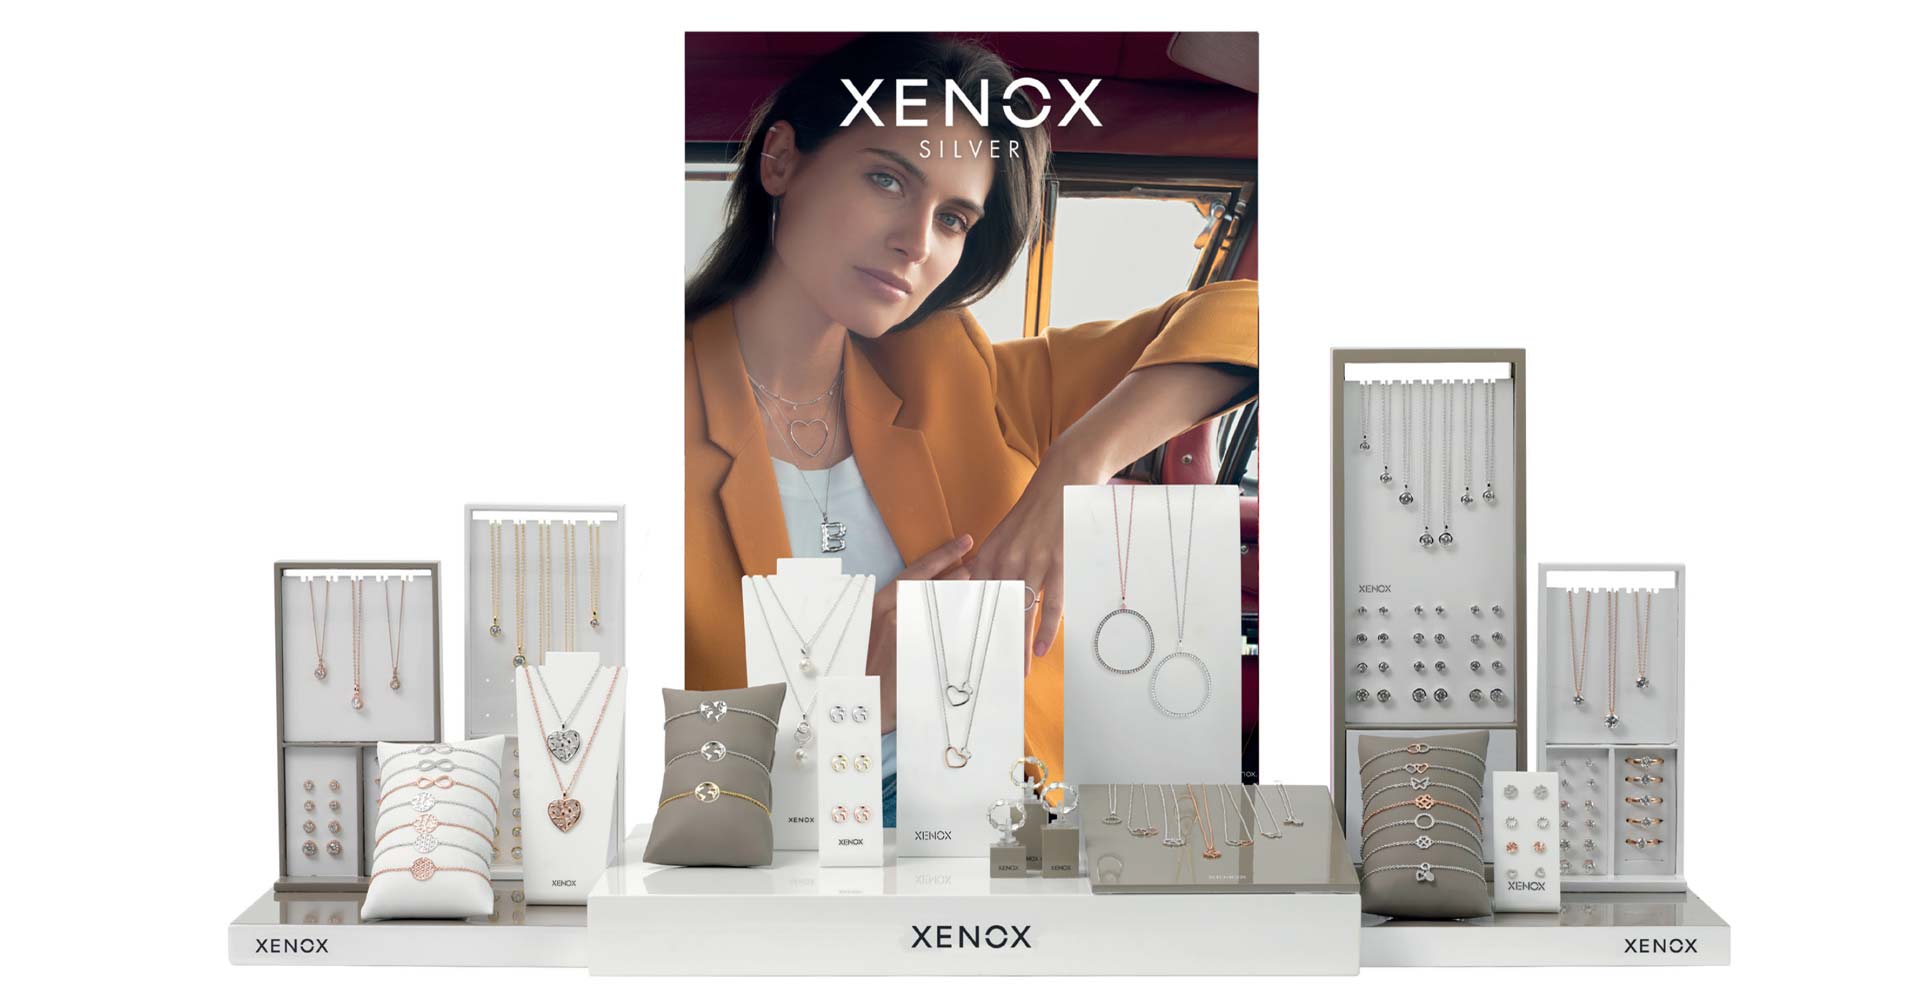 Das XENOX-Display präsentiert eindrücklich die Vielfalt der Marke.